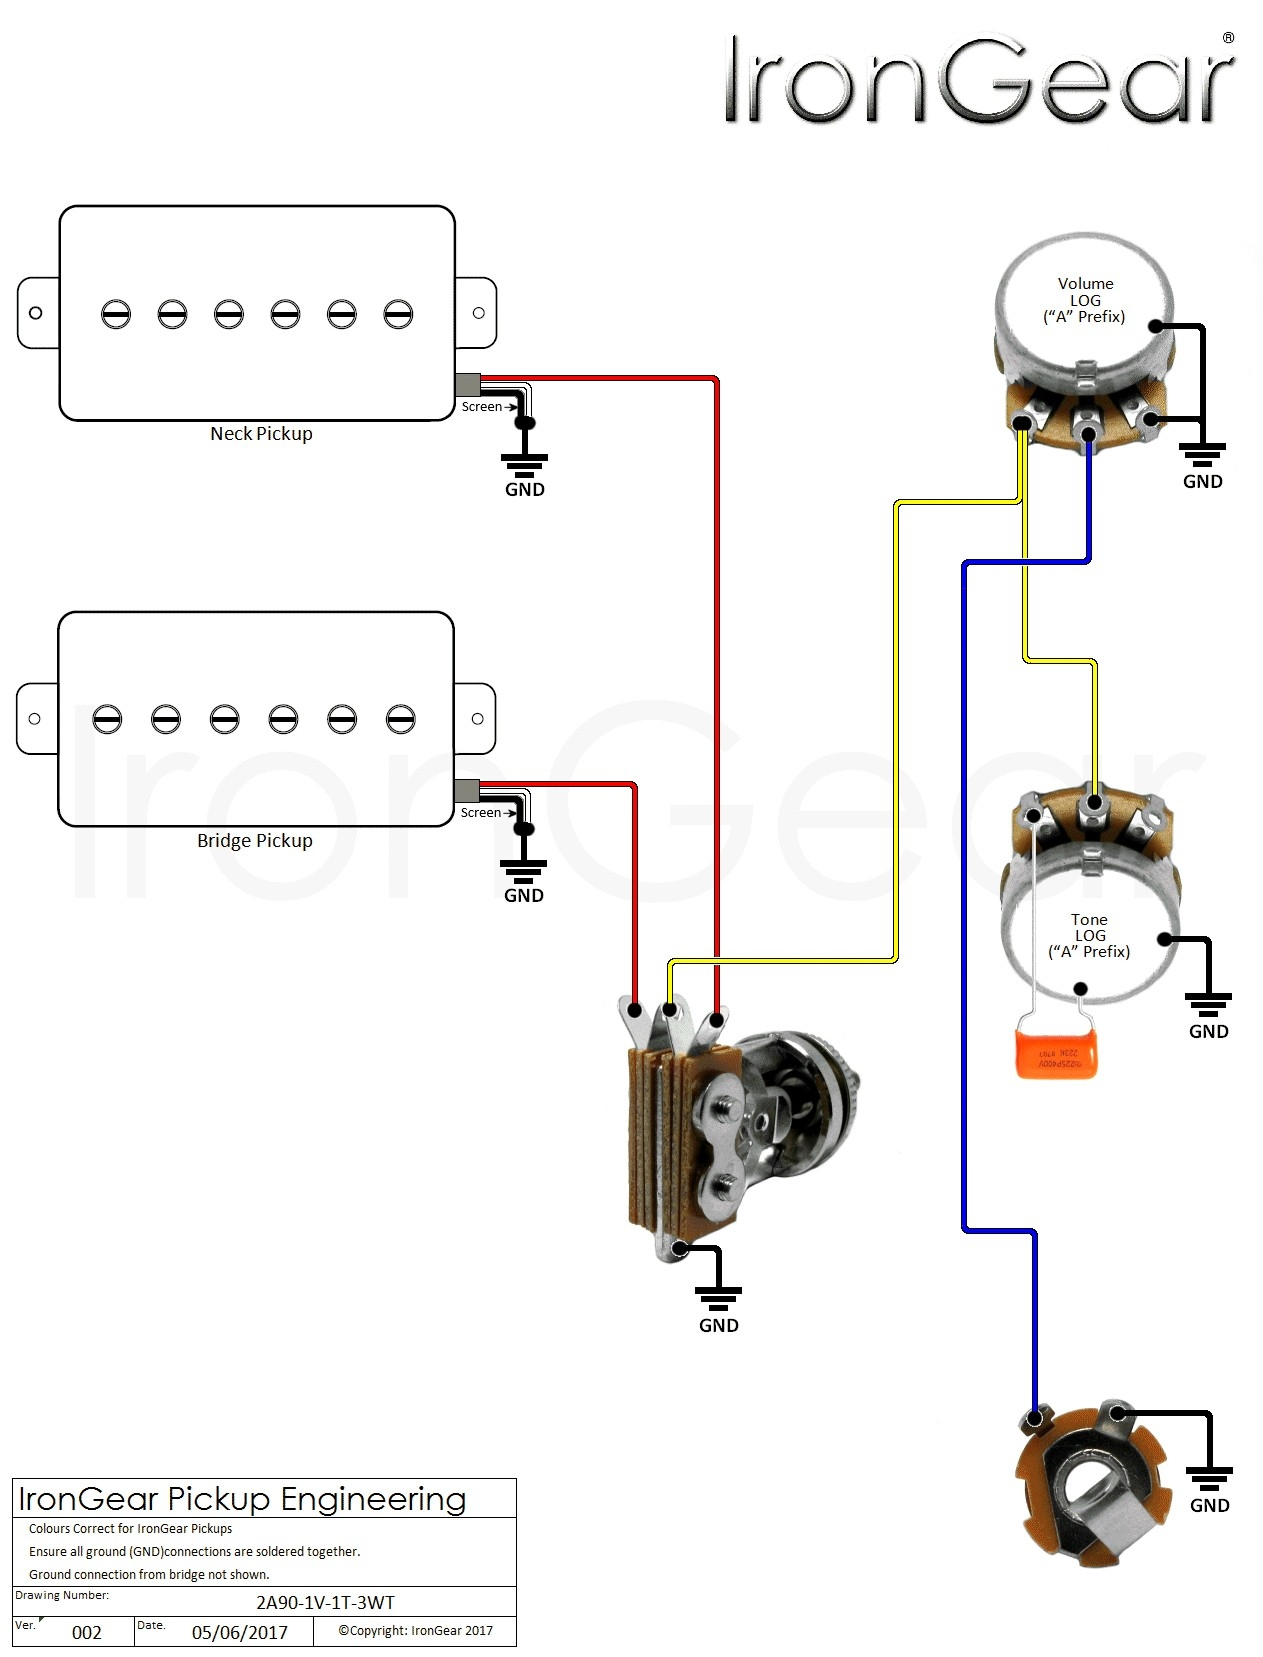 Guitar Wiring Diagrams Wiring Diagram Guitar Today Diagram Database